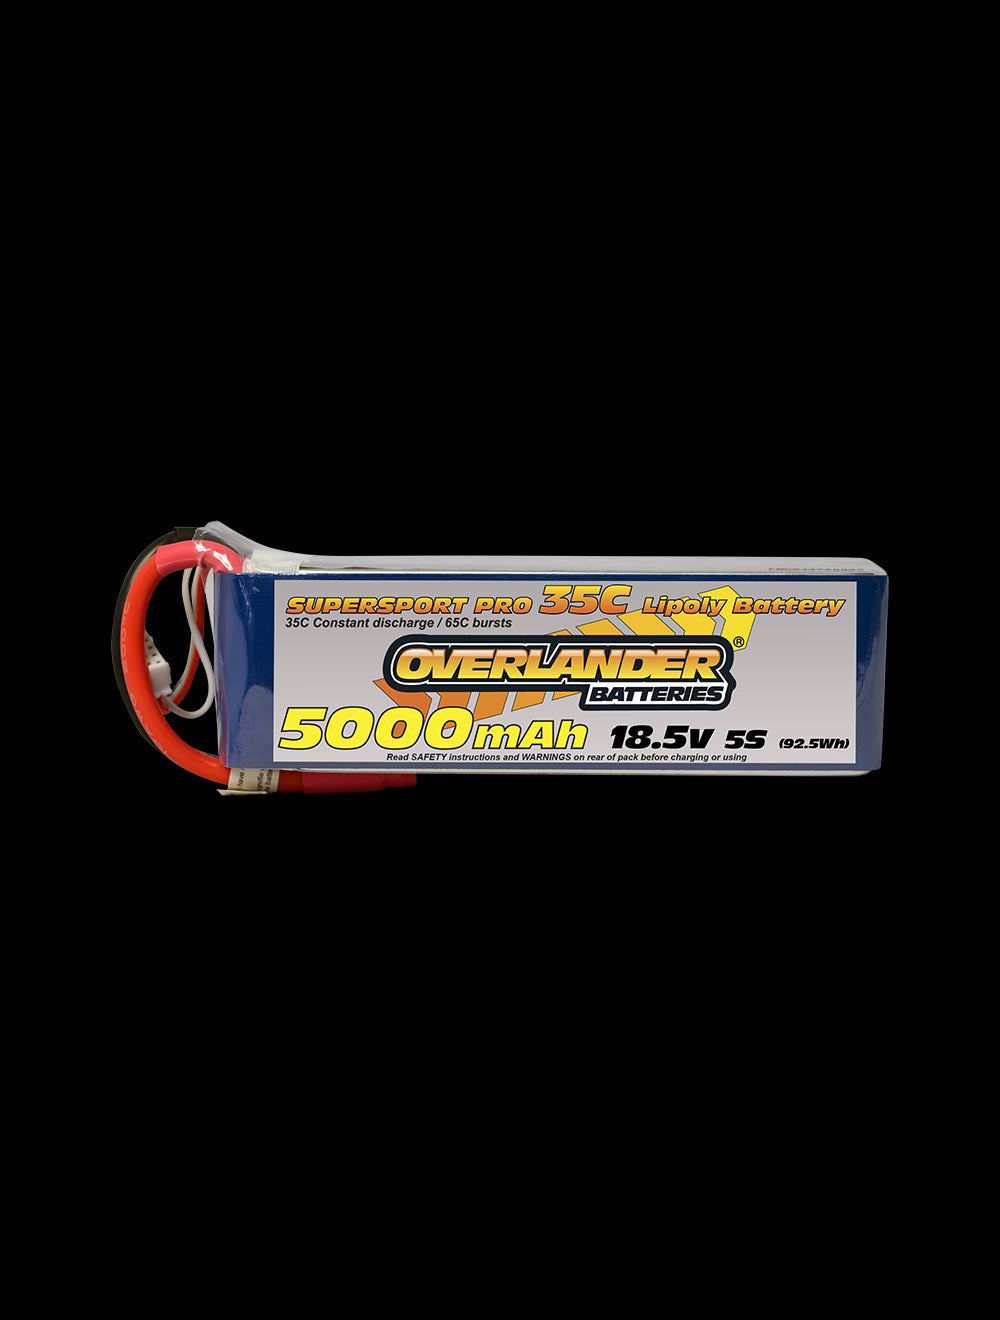 Overlander 5000mAh 18.5V 5S 35C Supersport Pro LiPo Battery - Deans Connector 2579